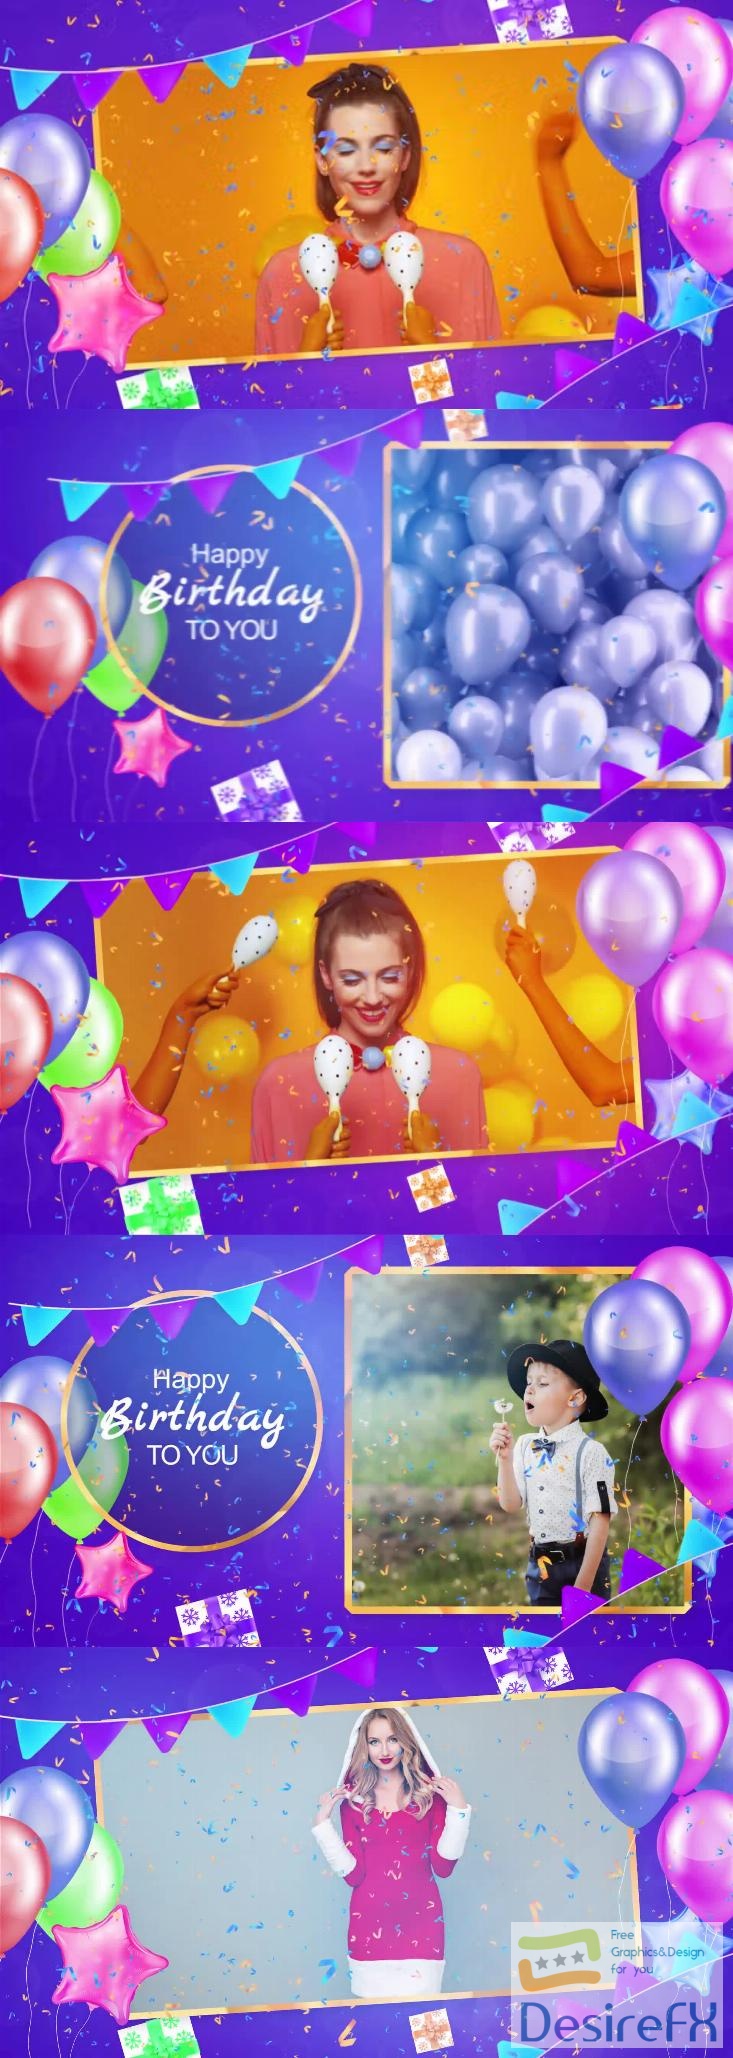 Videohive - Birthday Slideshow - 39026575